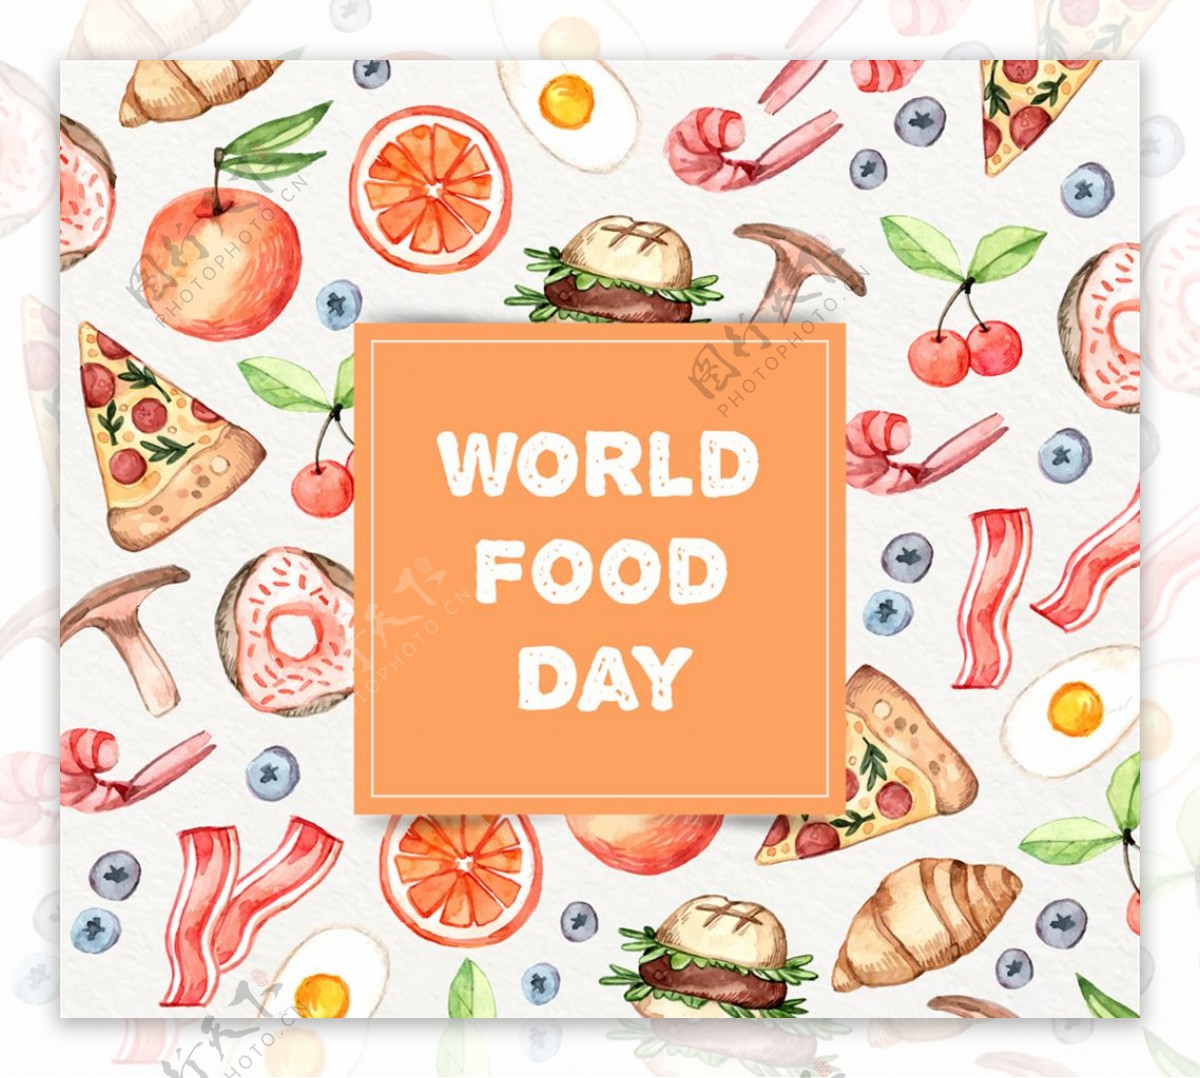 彩绘世界粮食日食物